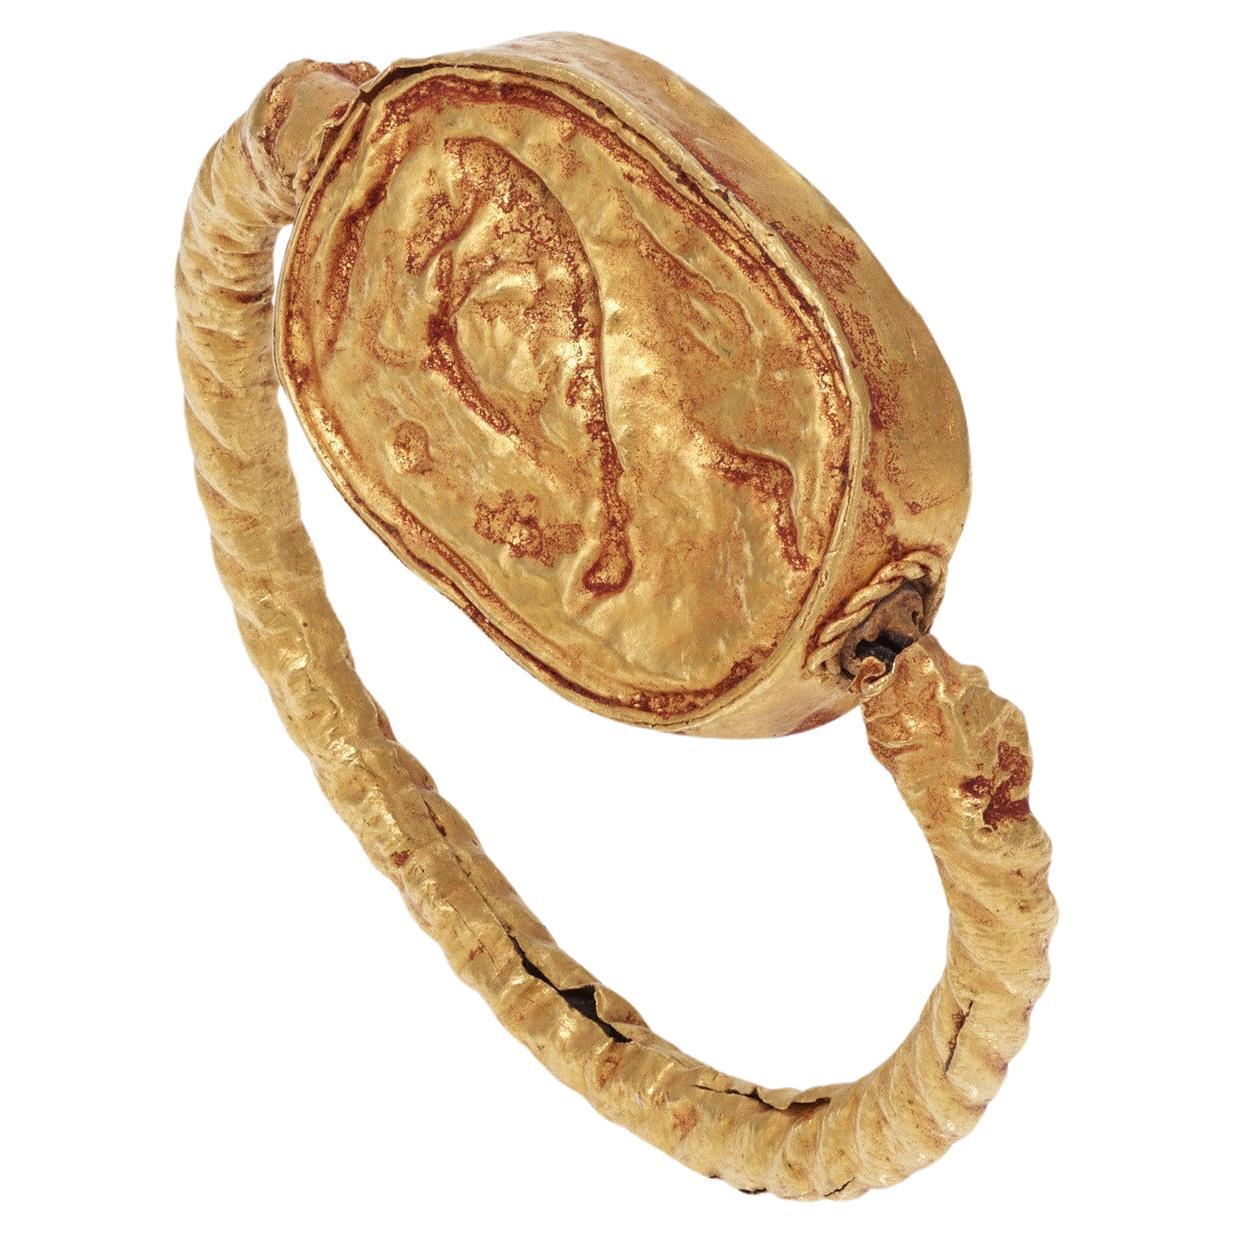 Ein goldener Ring mit dem Skarabäus eines Stiers.
Etruskisch, 4.-5. Jahrhundert v. Chr.
Ring Größe 8
Der Skarabäus misst 2cm x 1,4cm x 1.2cm
Der Goldring ist original.